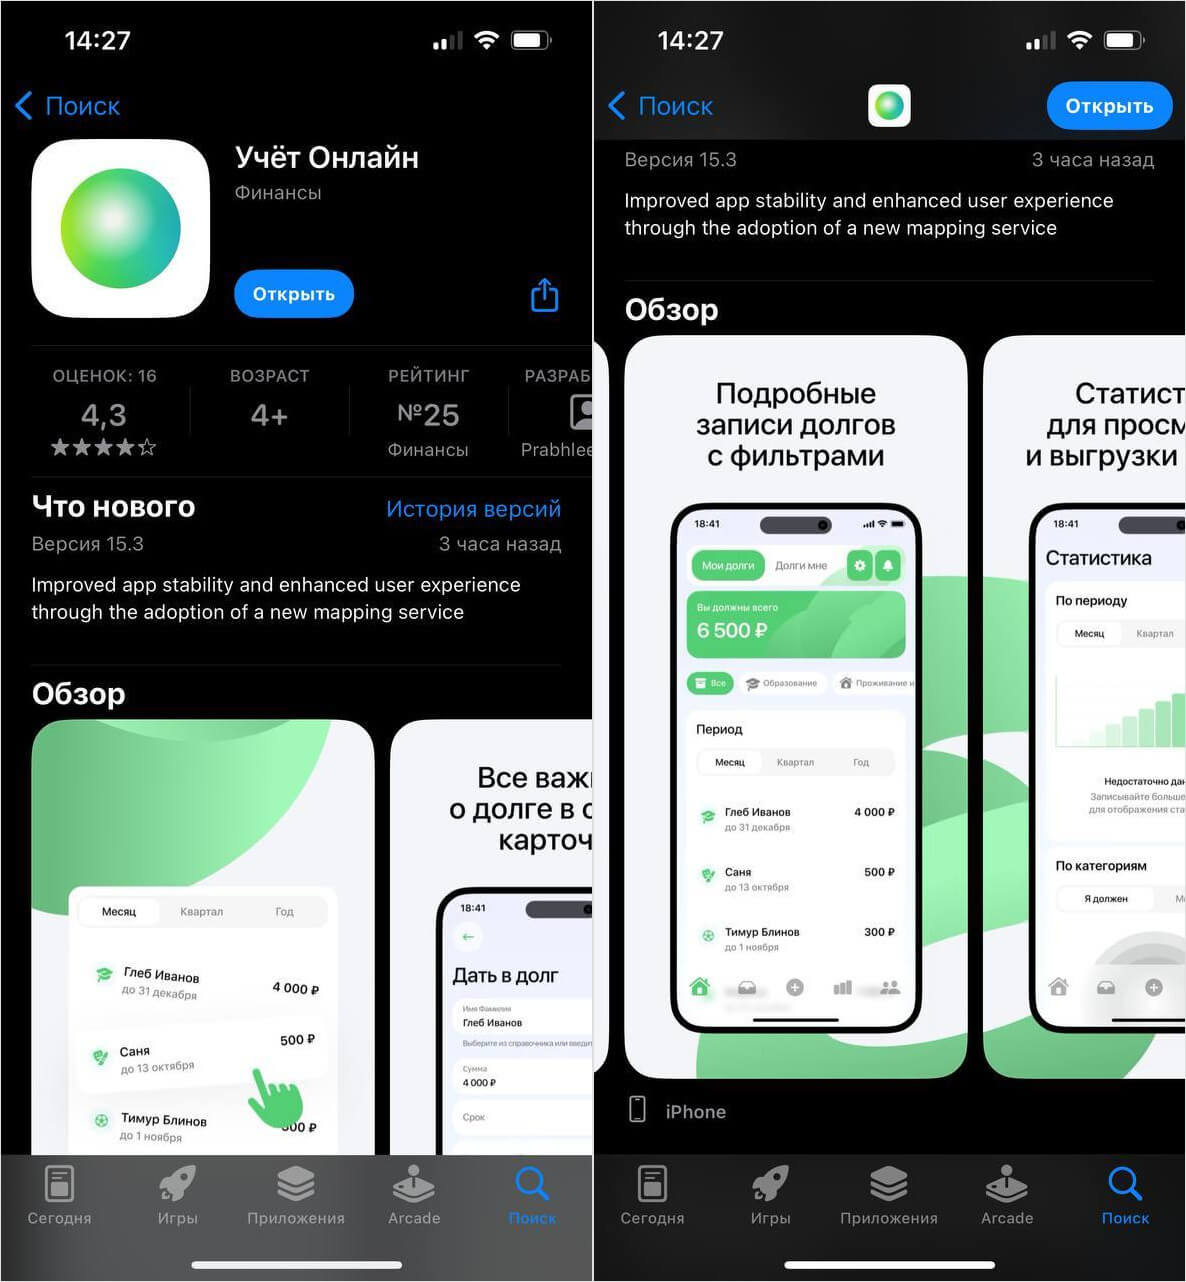 Вышло новое приложение Сбербанка — Учёт онлайн. Его удалили из App Store менее чем через сутки